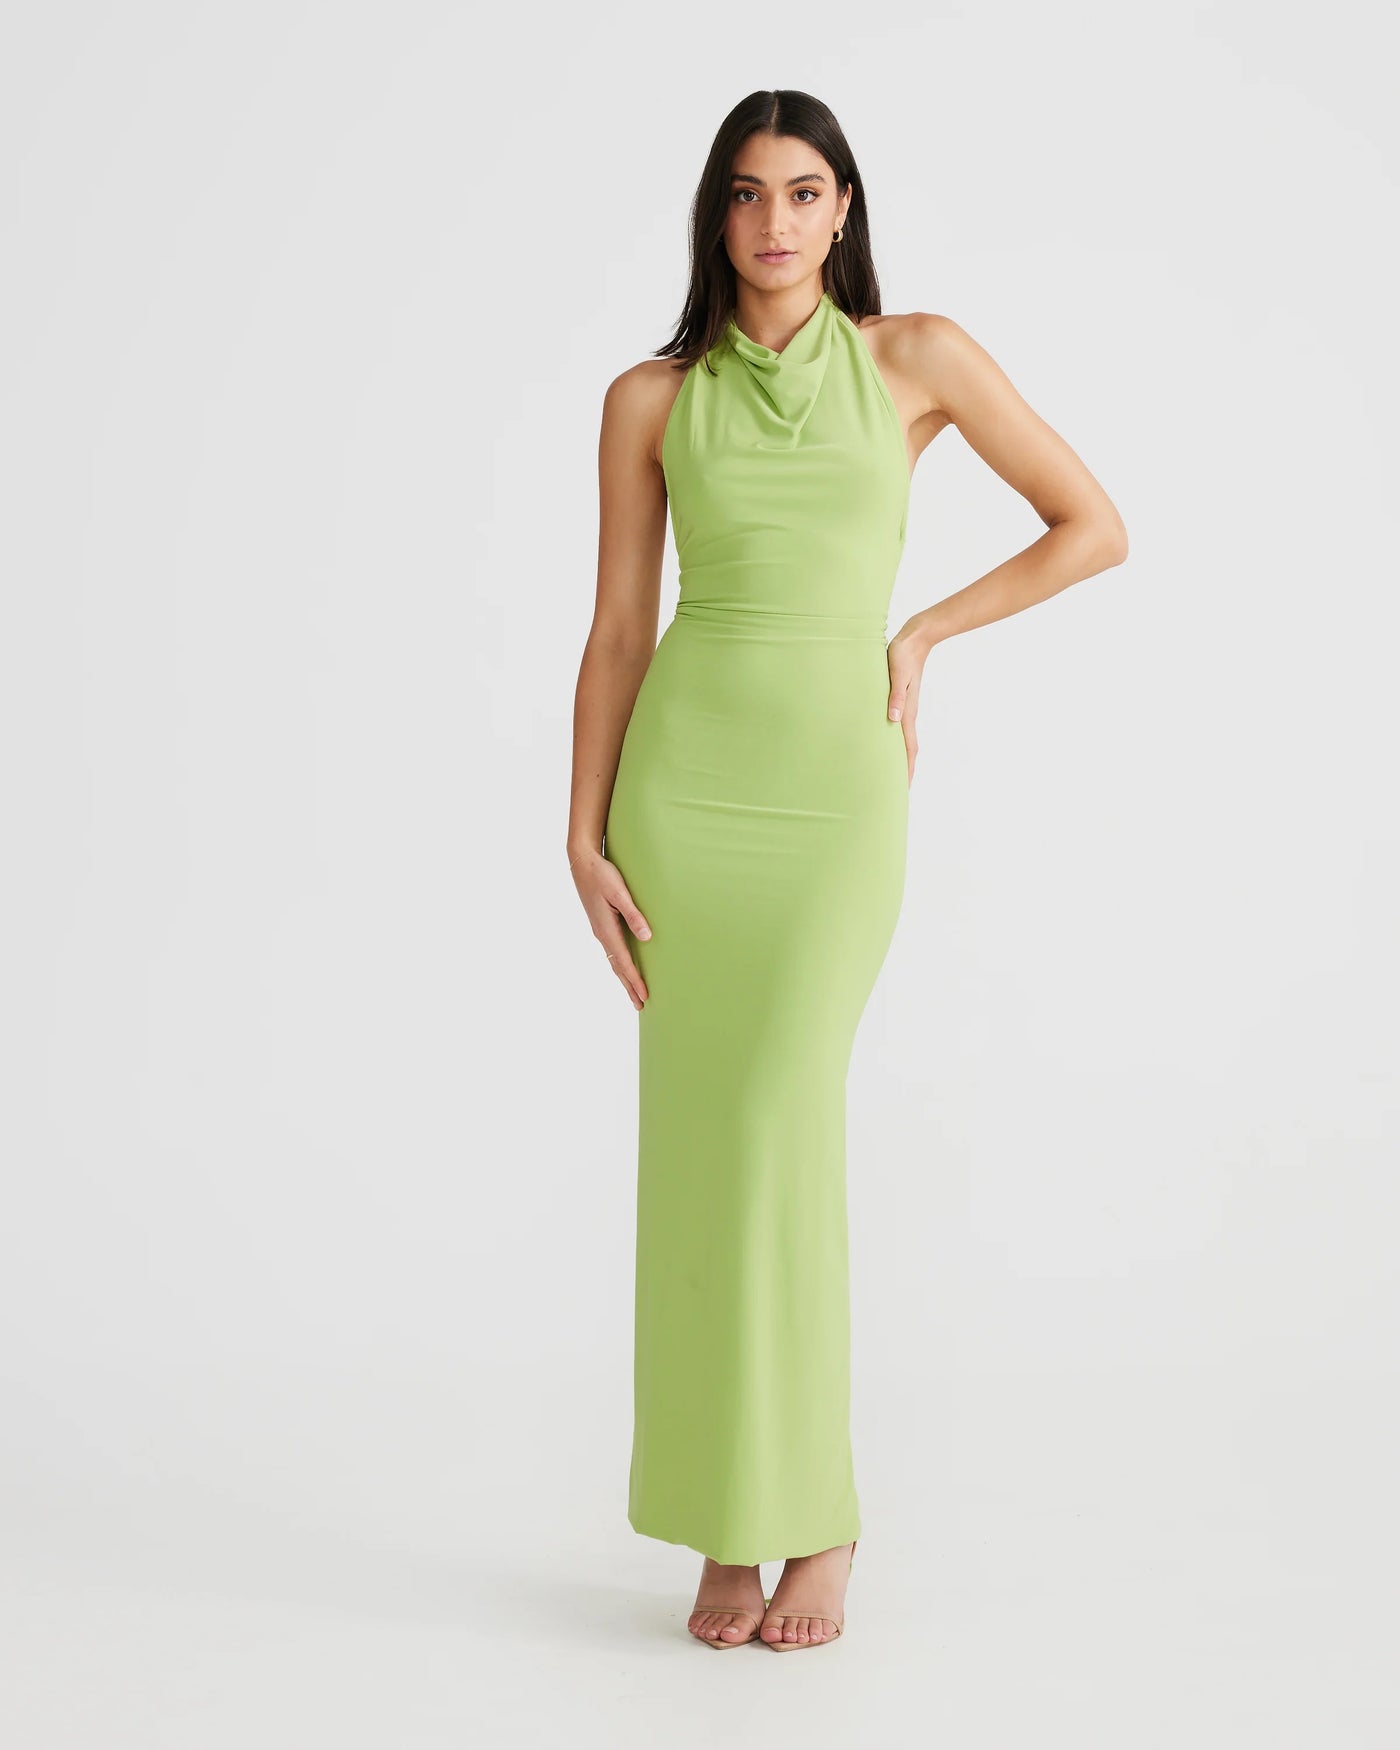 Natali Multi-Way Dress - Lime - SHOPJAUS - JAUS